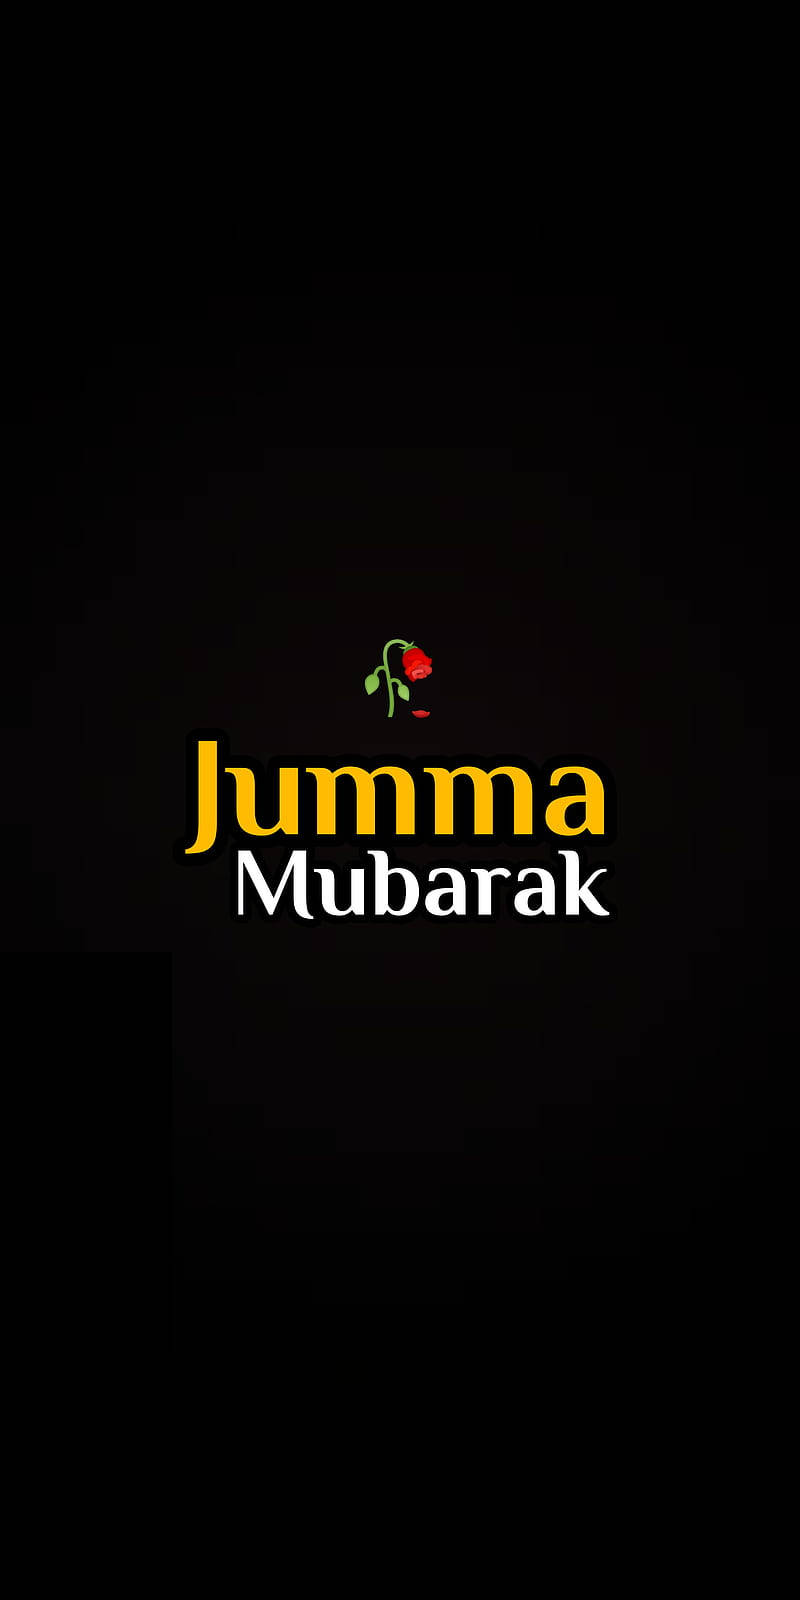 Jumma Mubarak Minimalist Background